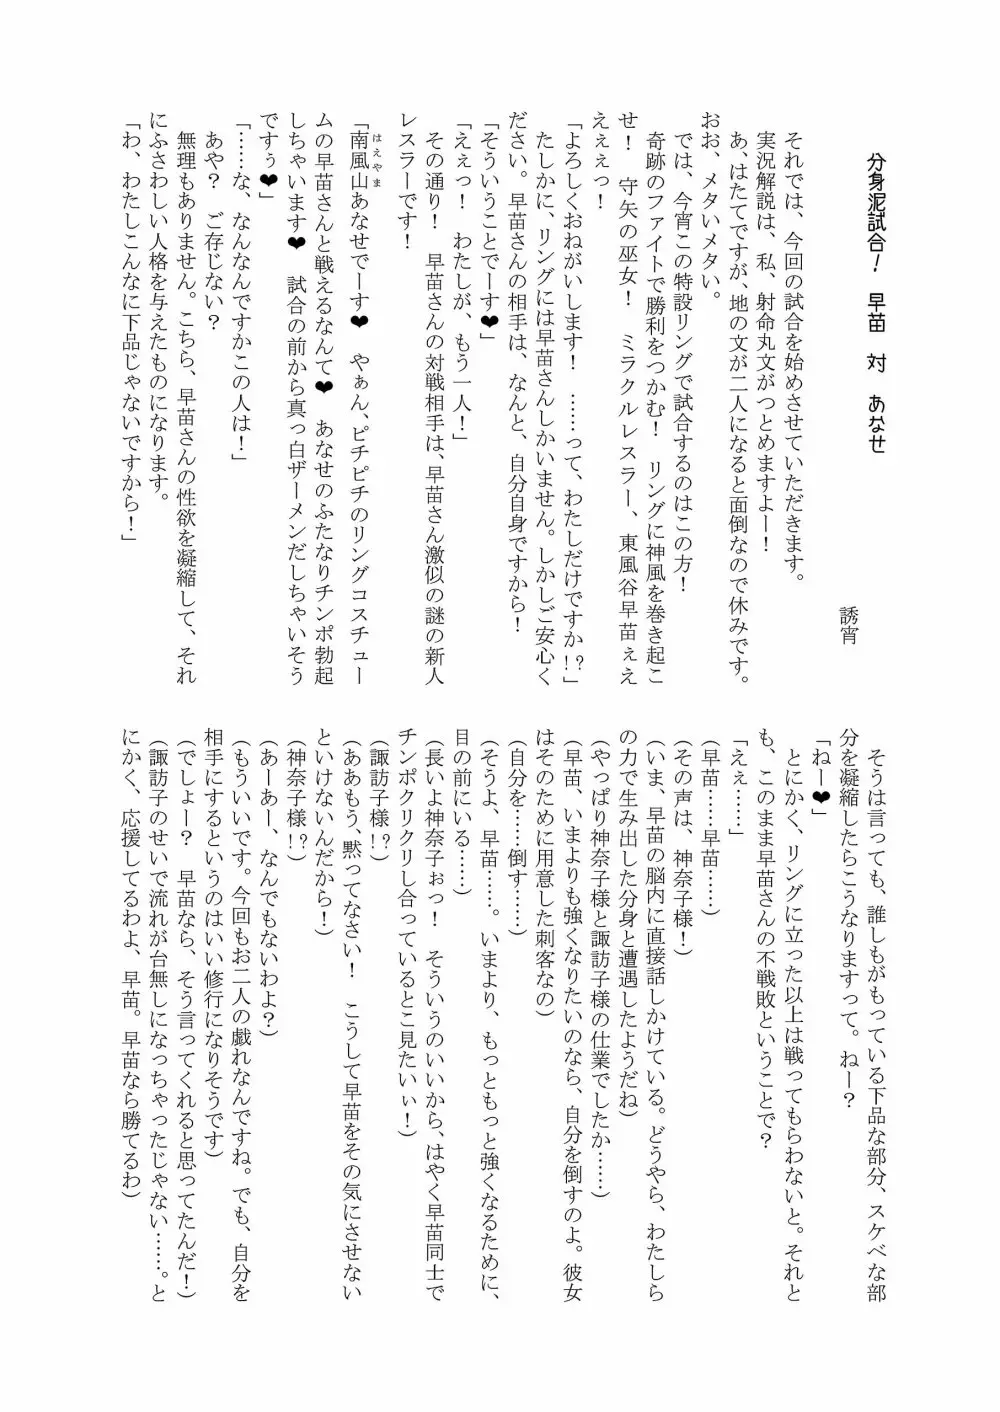 幻想郷フタナリチンポレスリング合同誌2 GFCW Extreme Joker 111ページ